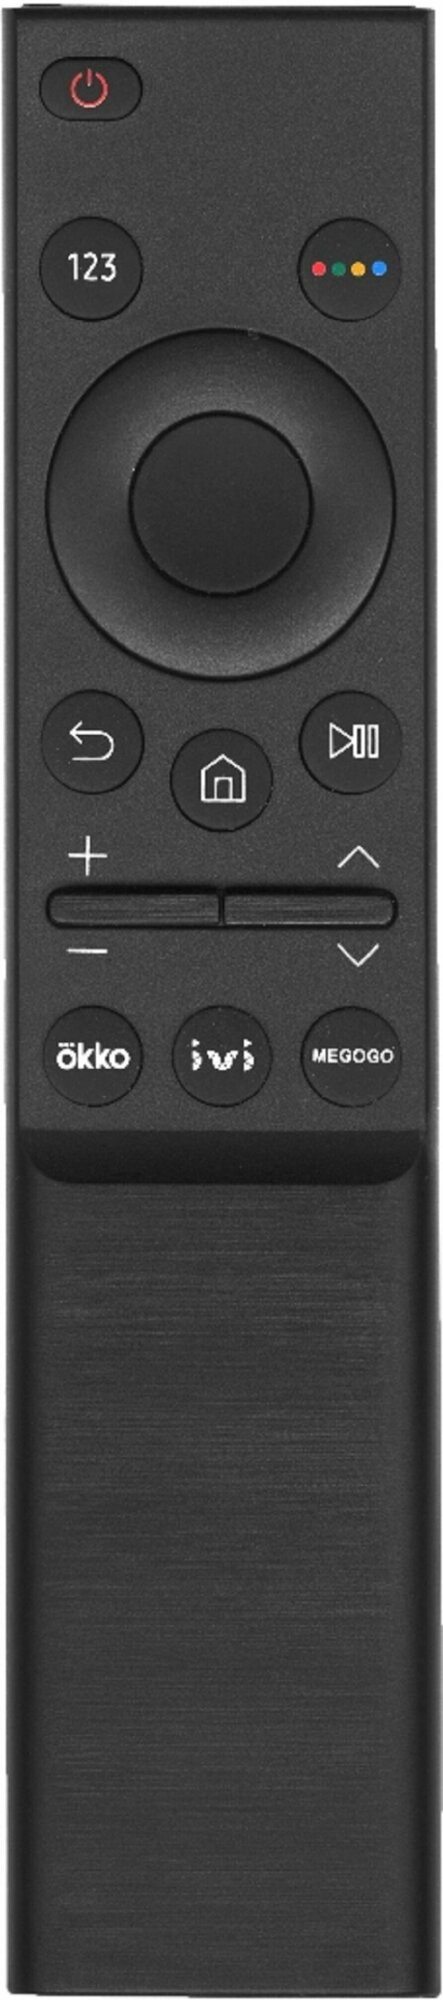 Пульт SAMSUNG BN59-01358F для Smart телевизоров 2021 года с кнопками OKKO IVI Megogo